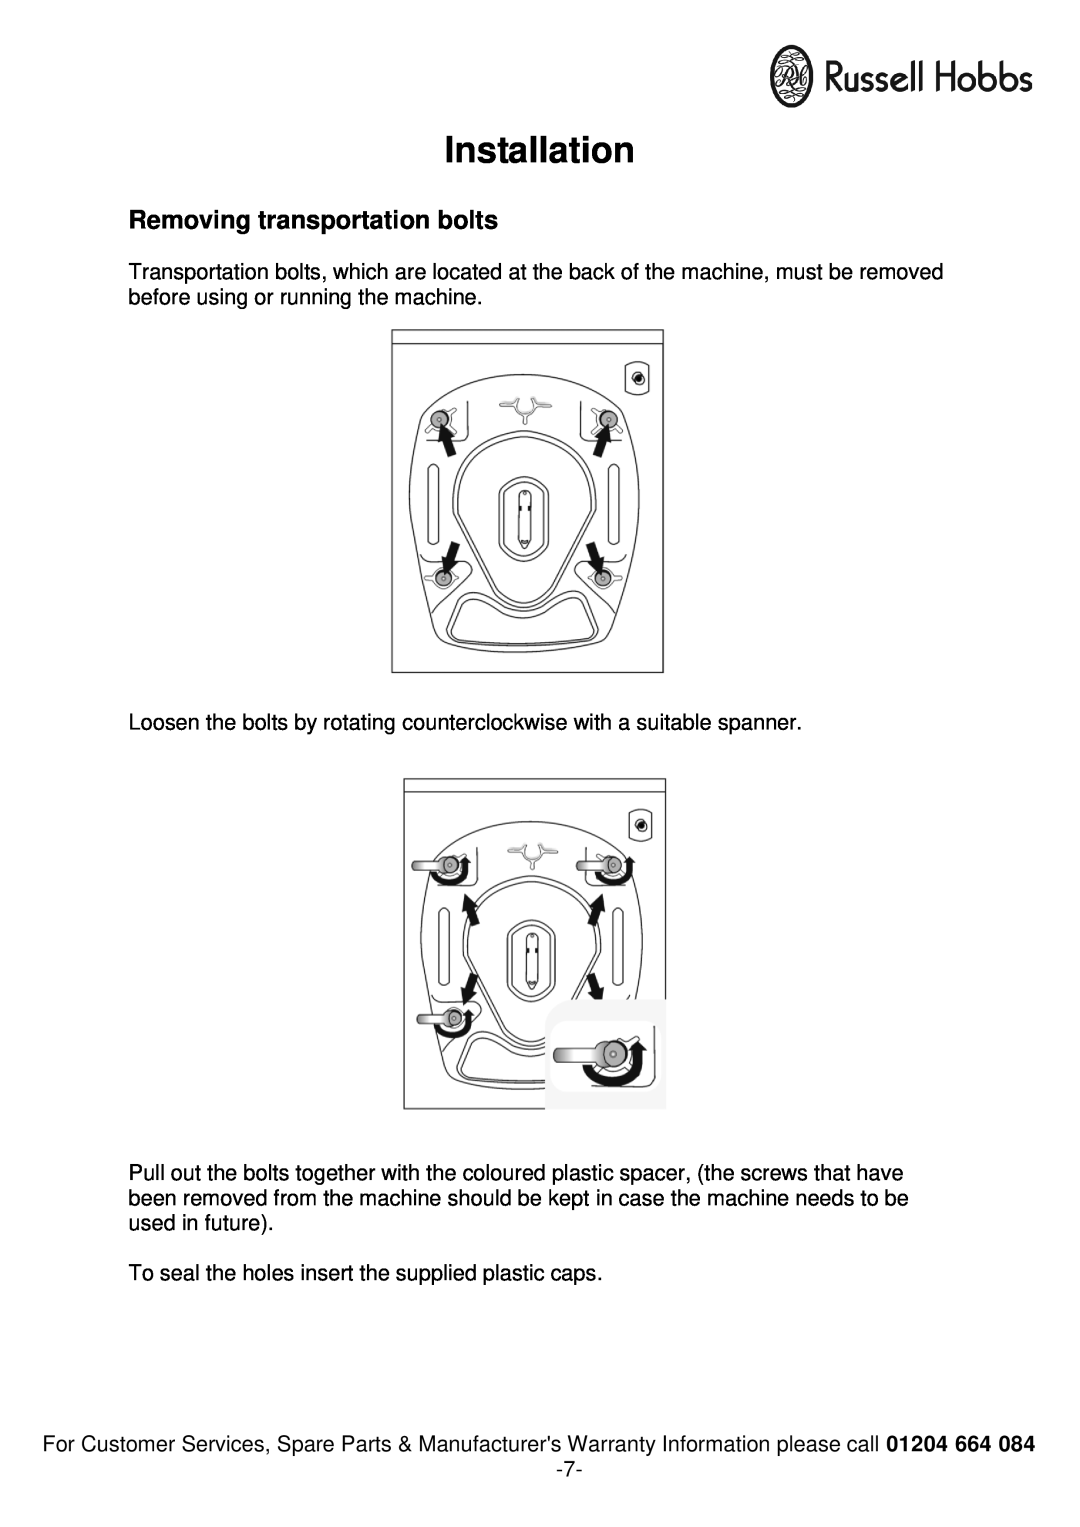 Russell Hobbs RH1261TW instruction manual Installation, Removing transportation bolts 